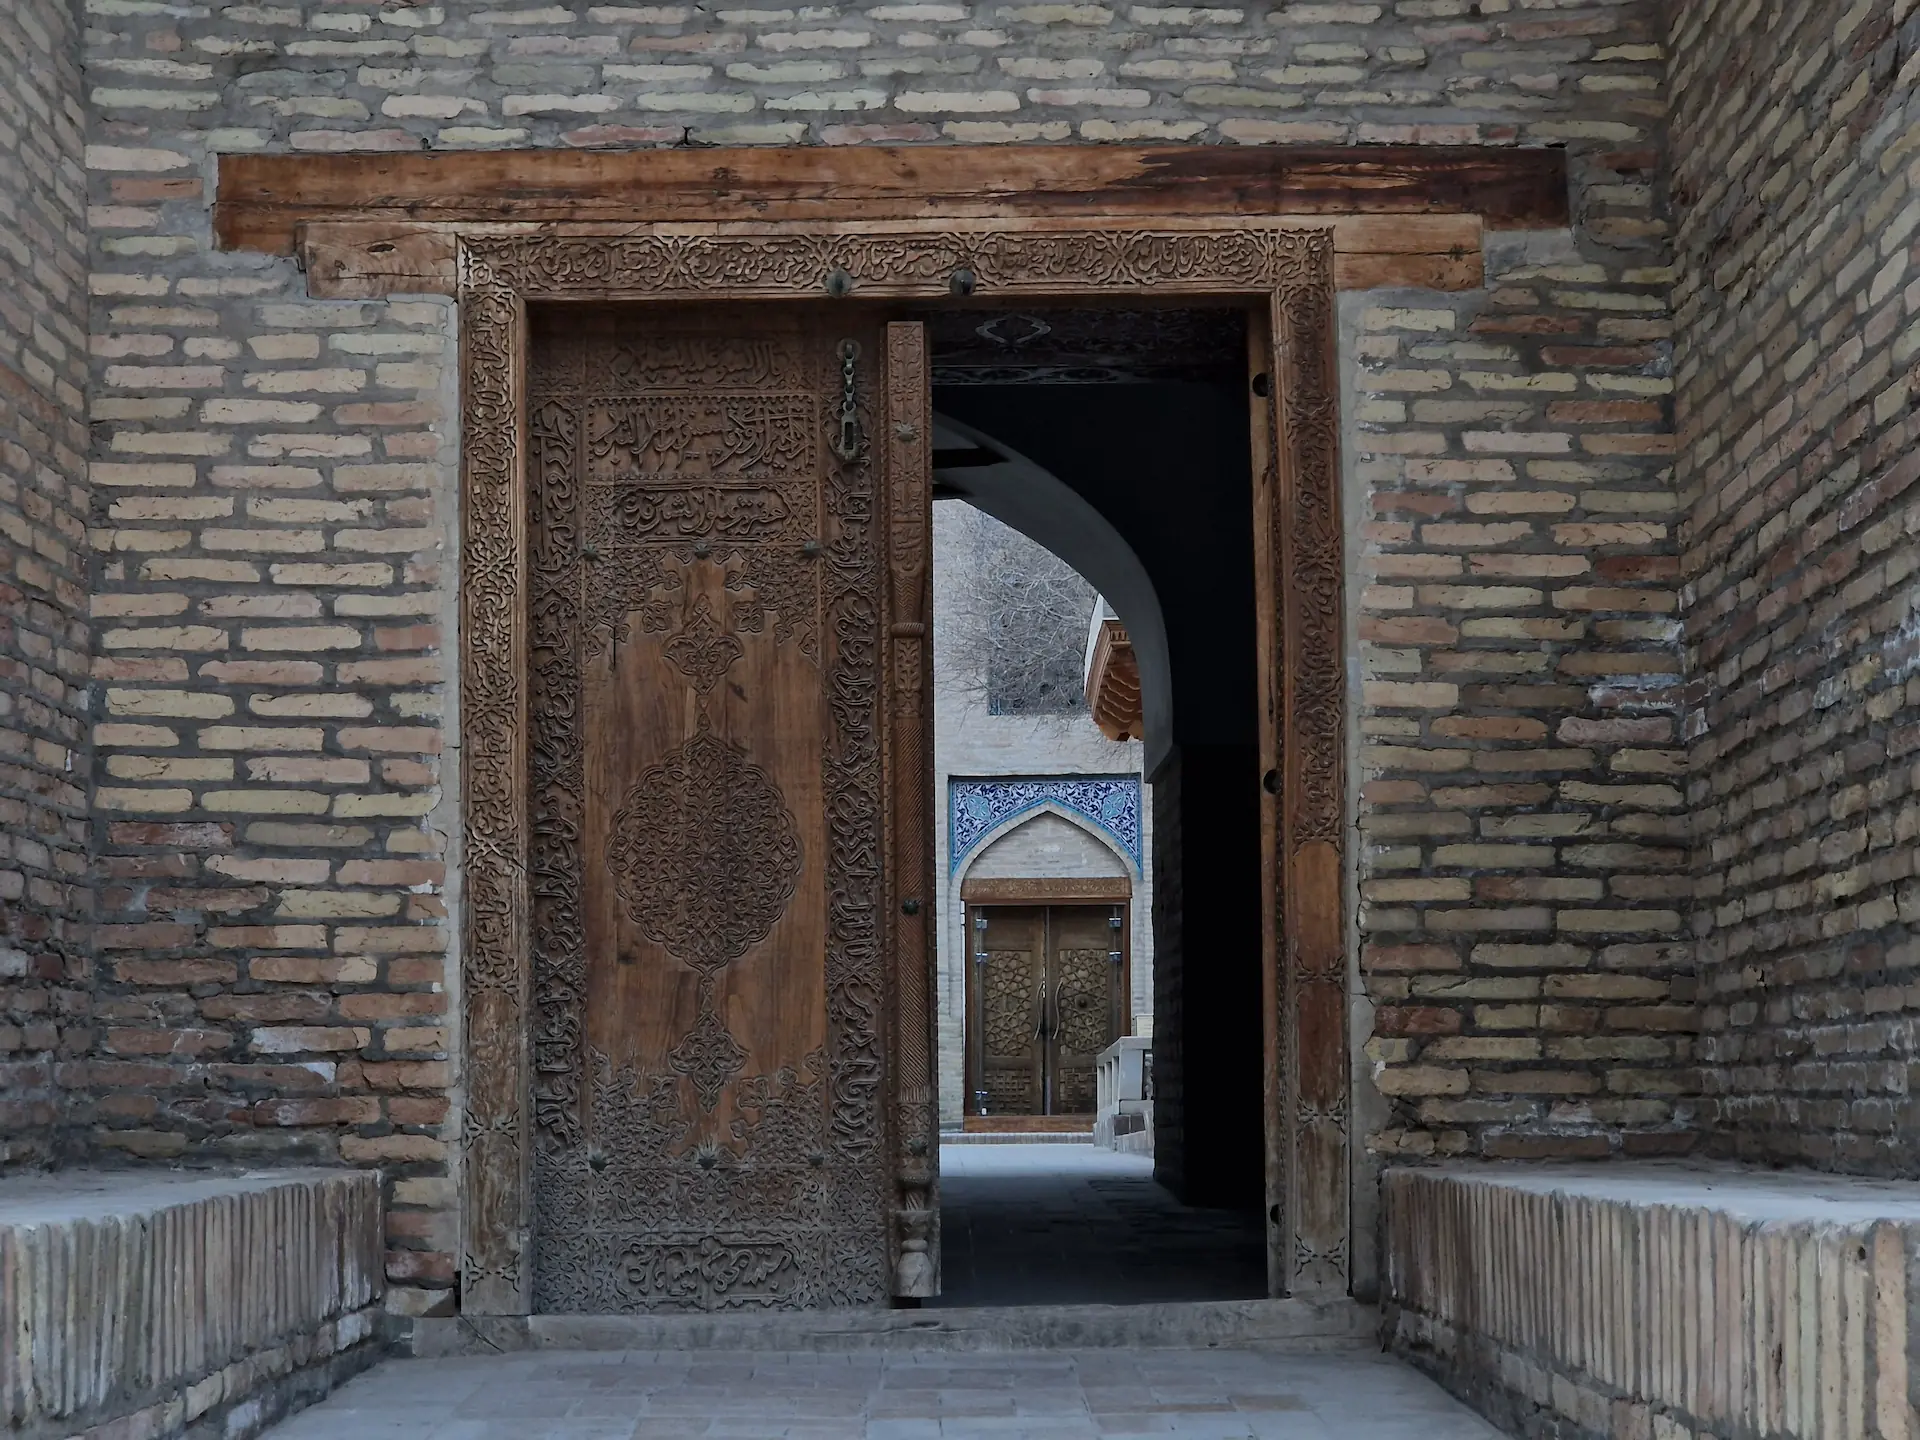 Une grande porte en bois entrouverte laisse voir sa cour intérieure